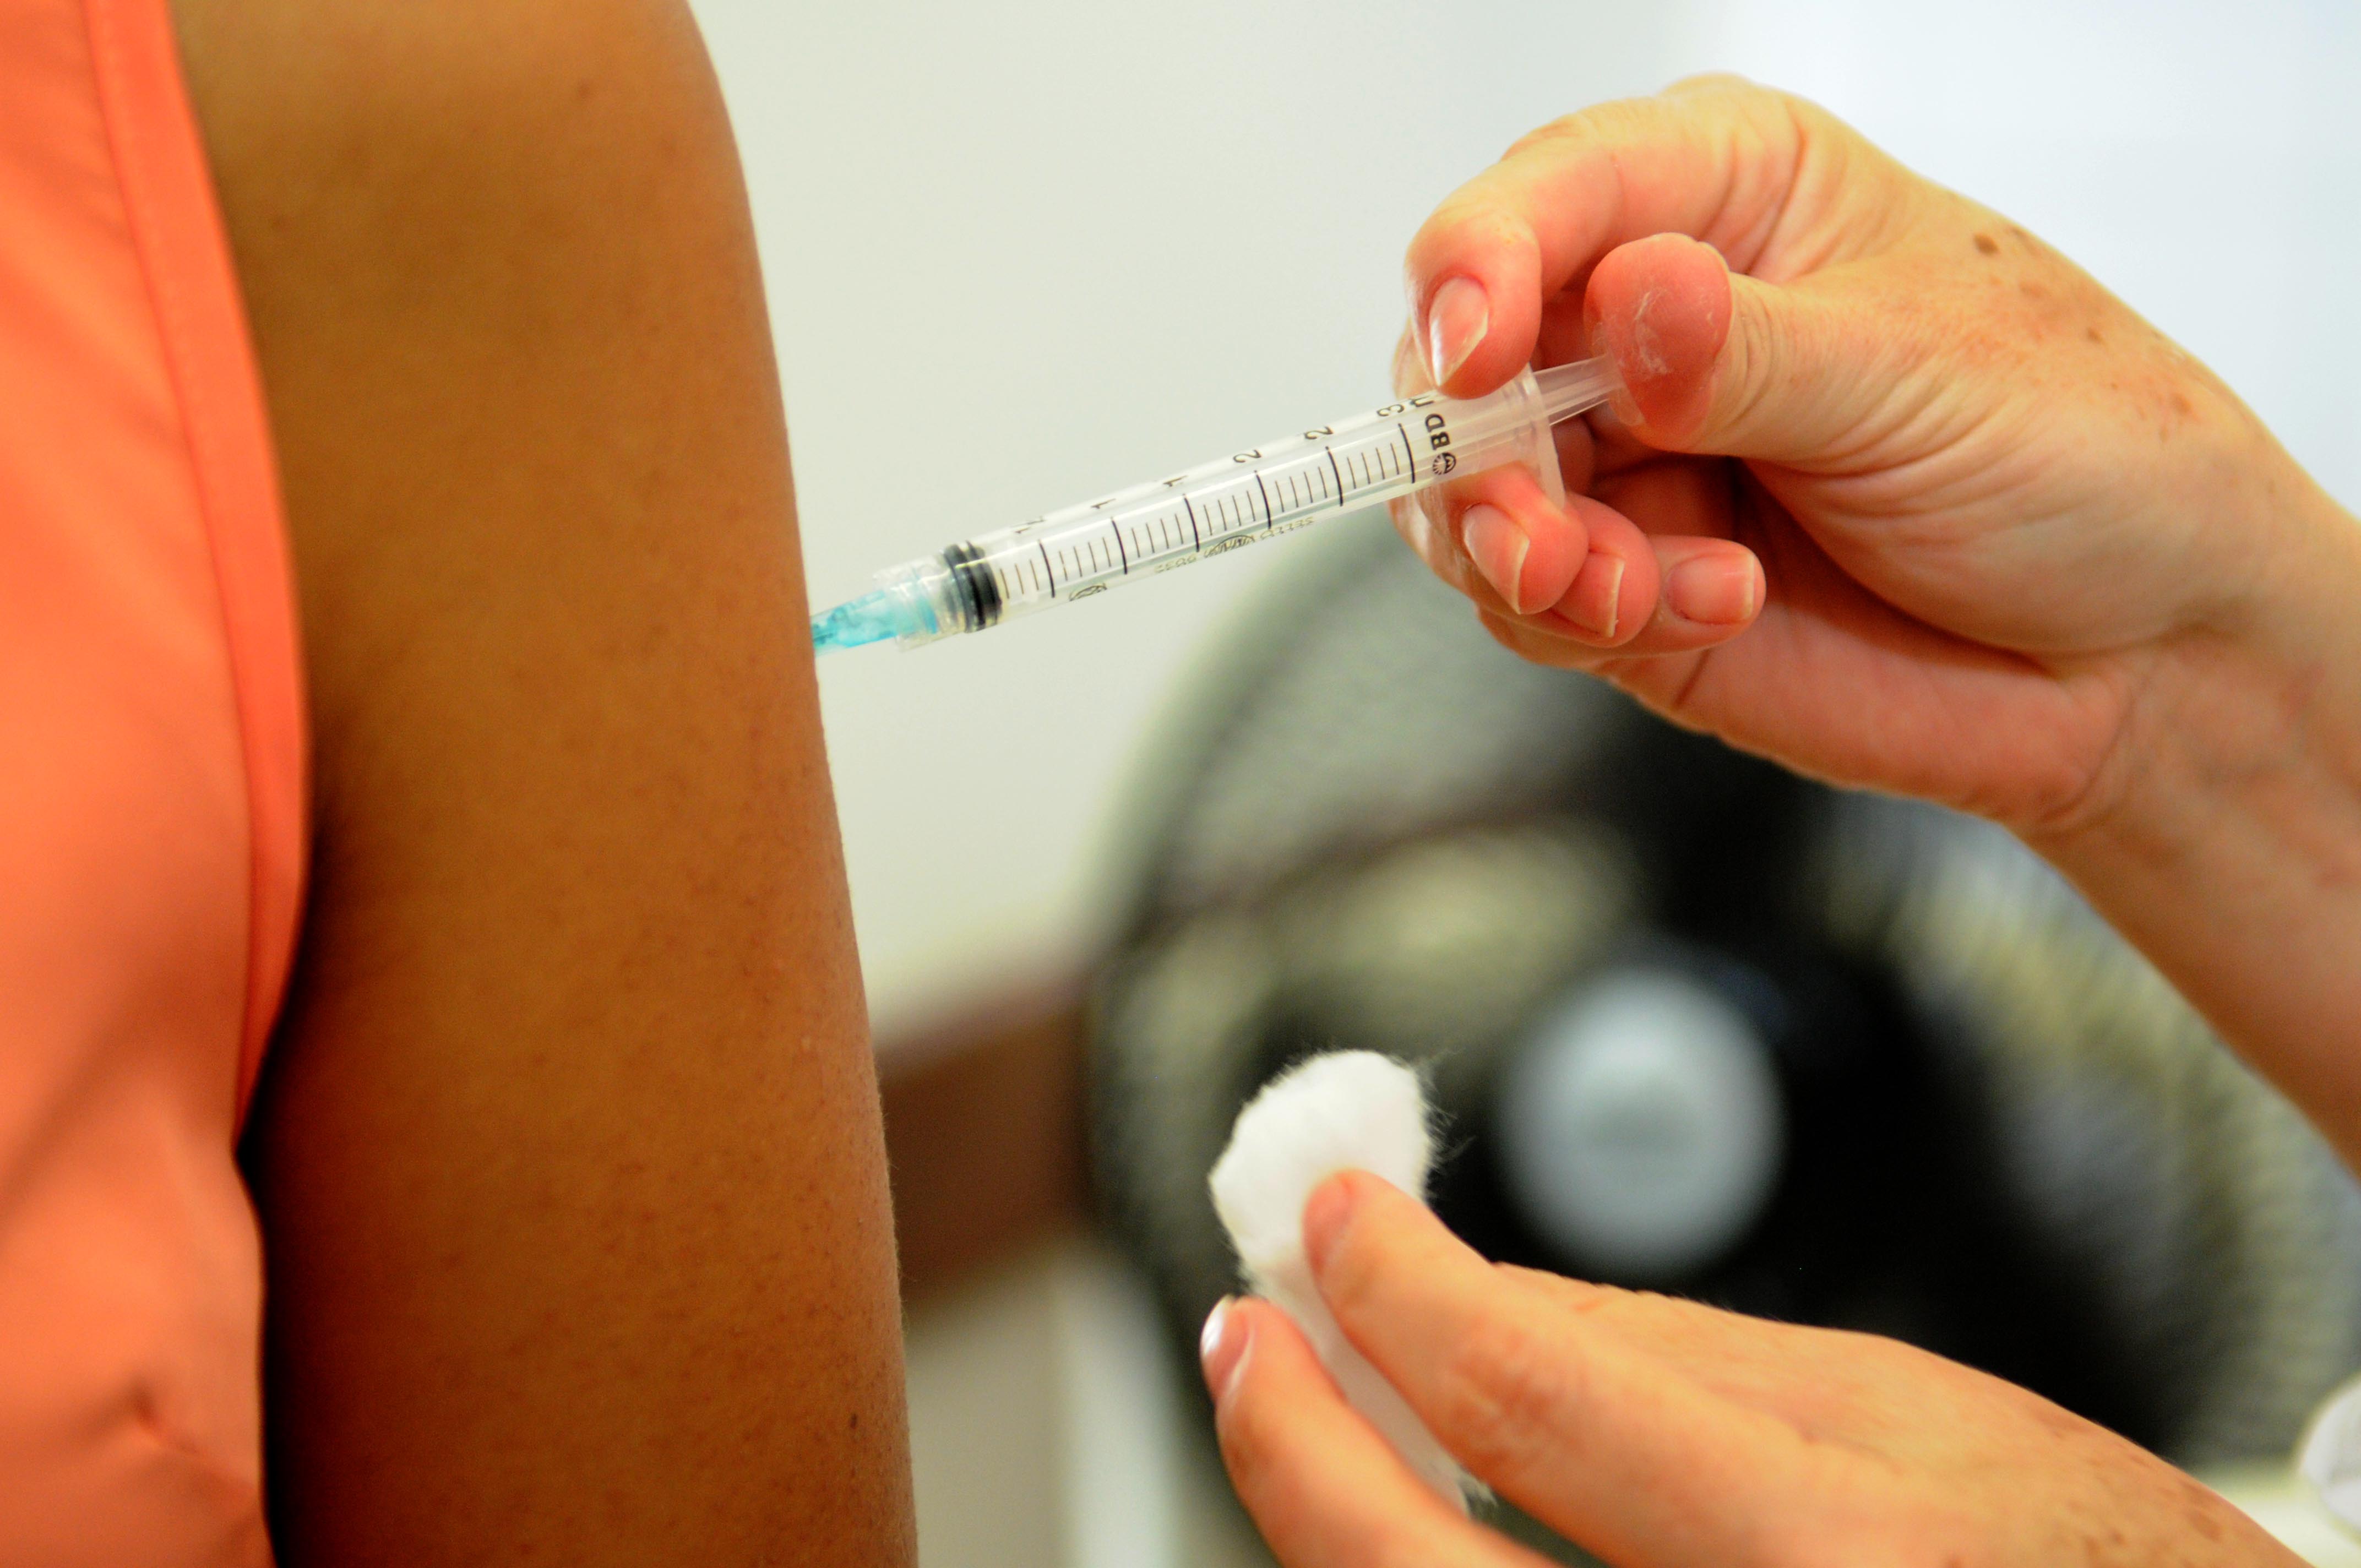 Brasil desenvolve duas vacinas contra Covid-19 com resultados promissores. Saiba mais